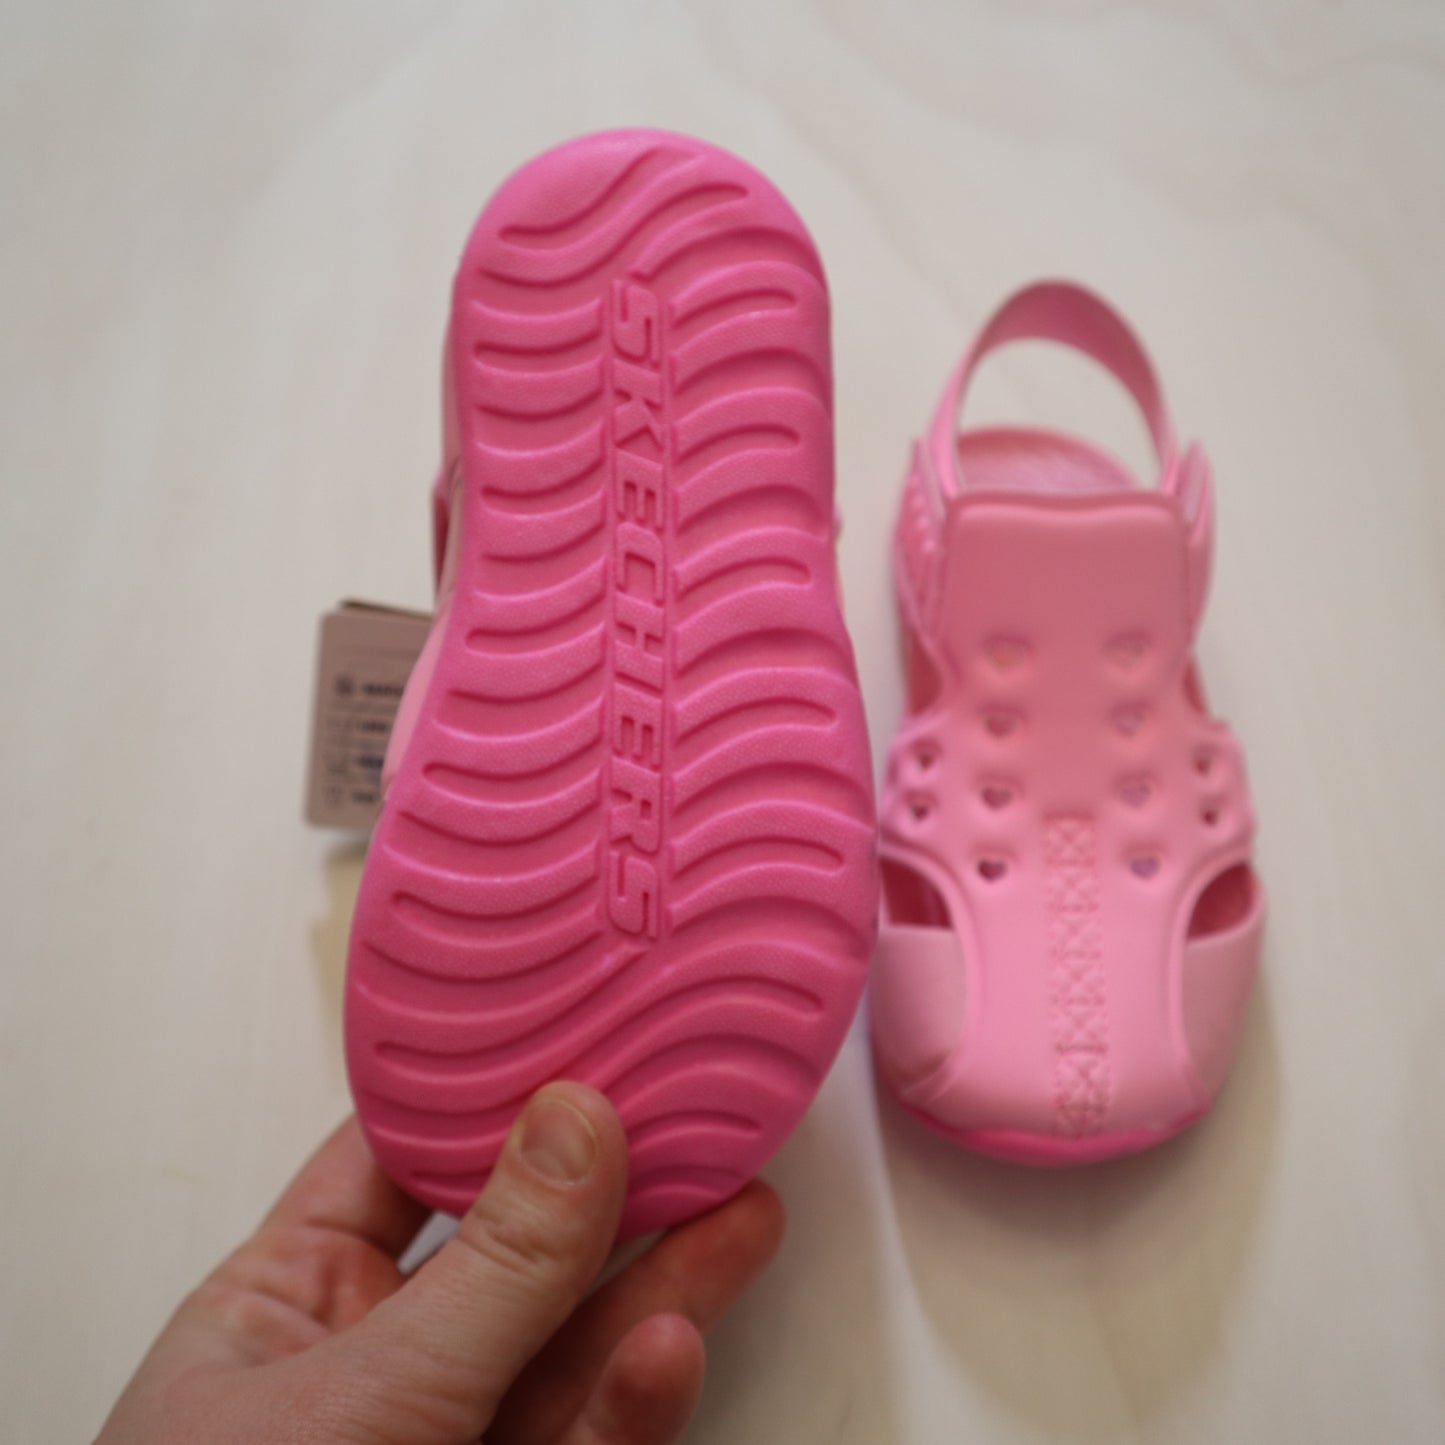 Skechers - Sandals (10C)